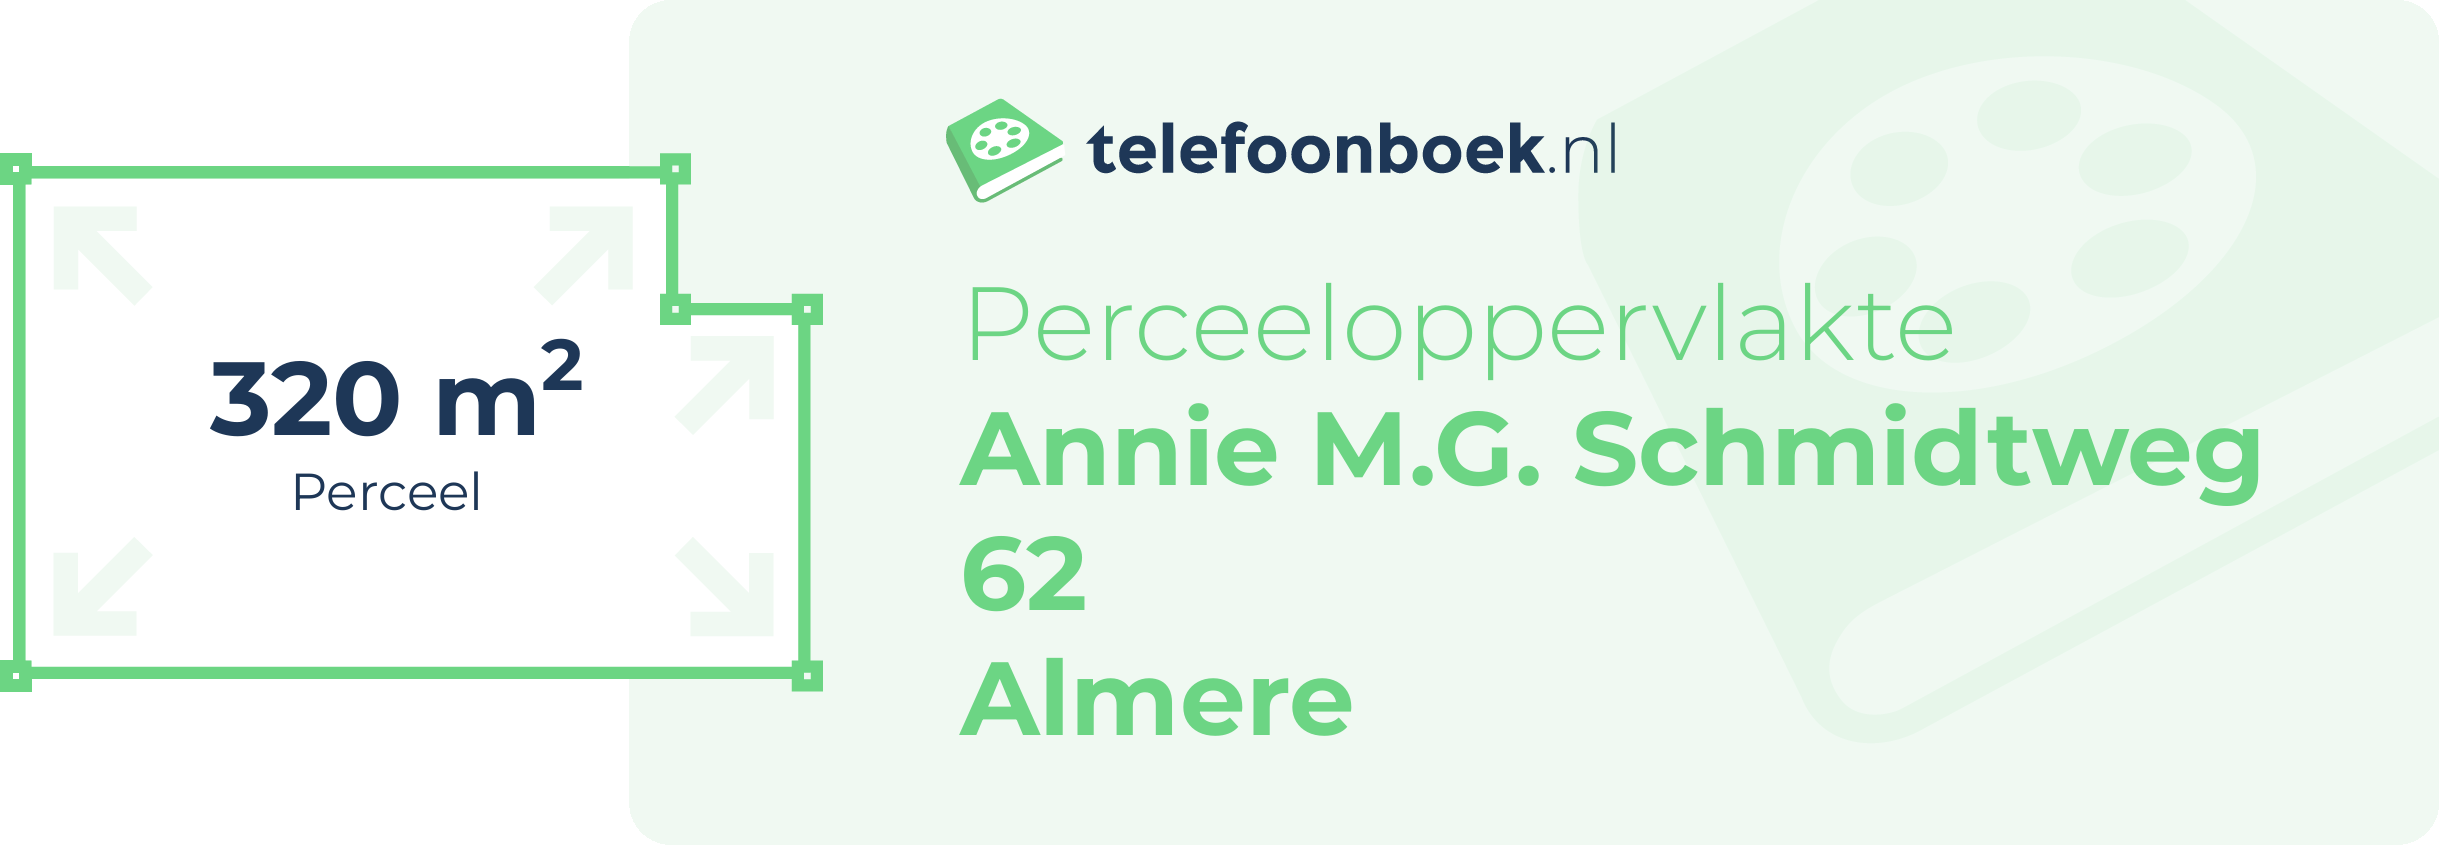 Perceeloppervlakte Annie M.G. Schmidtweg 62 Almere